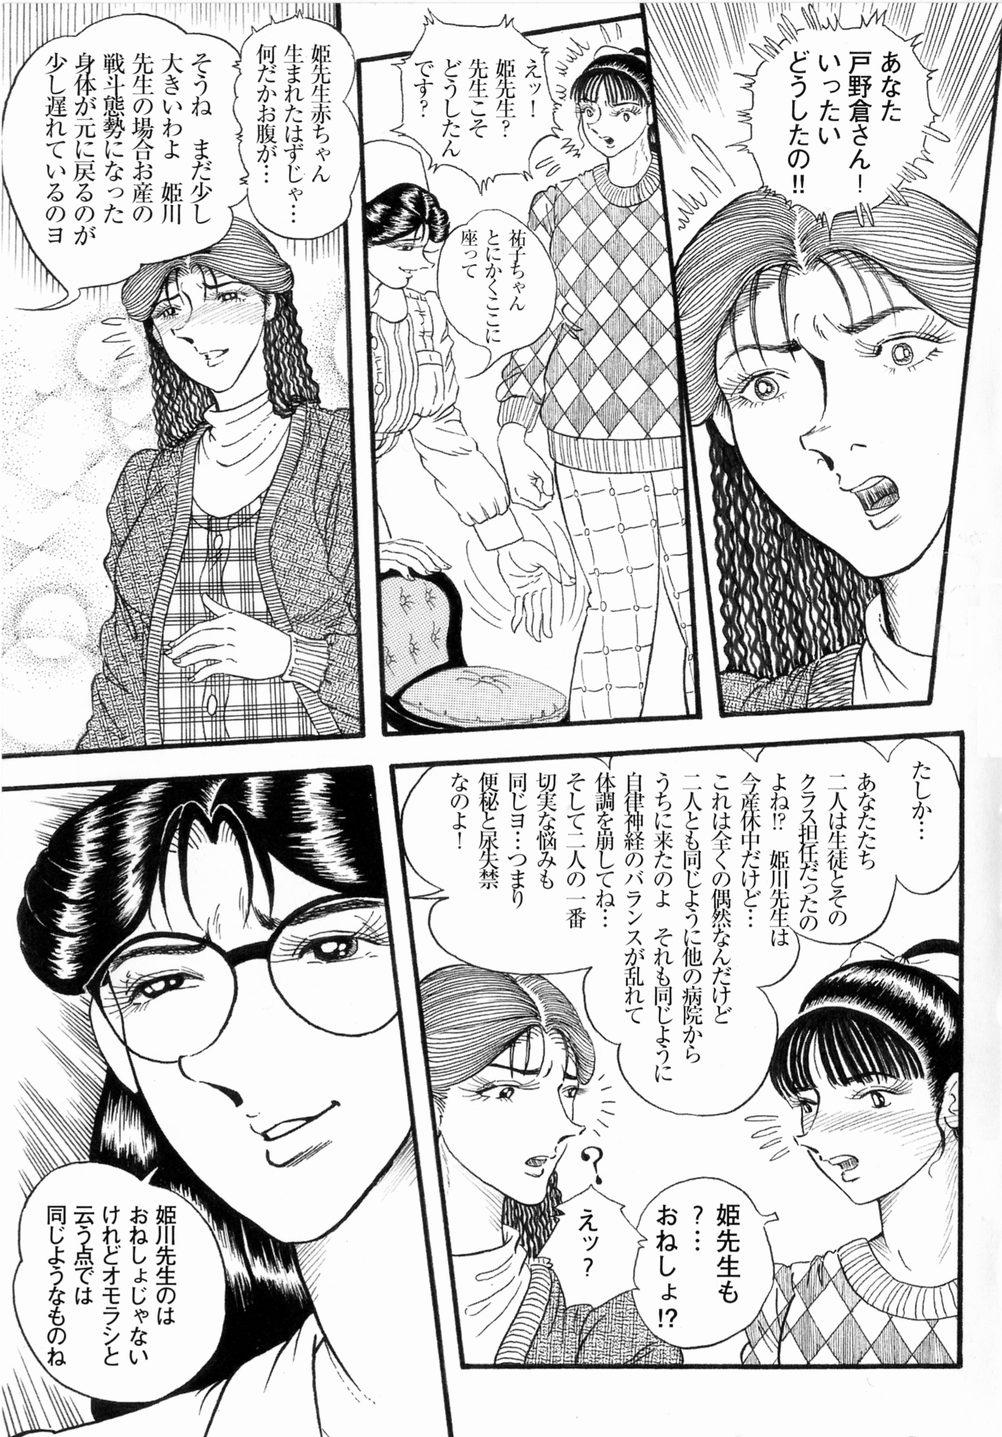 Tight Cunt Hashimoto Iin Shinsatsu Note - Yuuko no Jijou Nami no Jijou Deflowered - Page 5